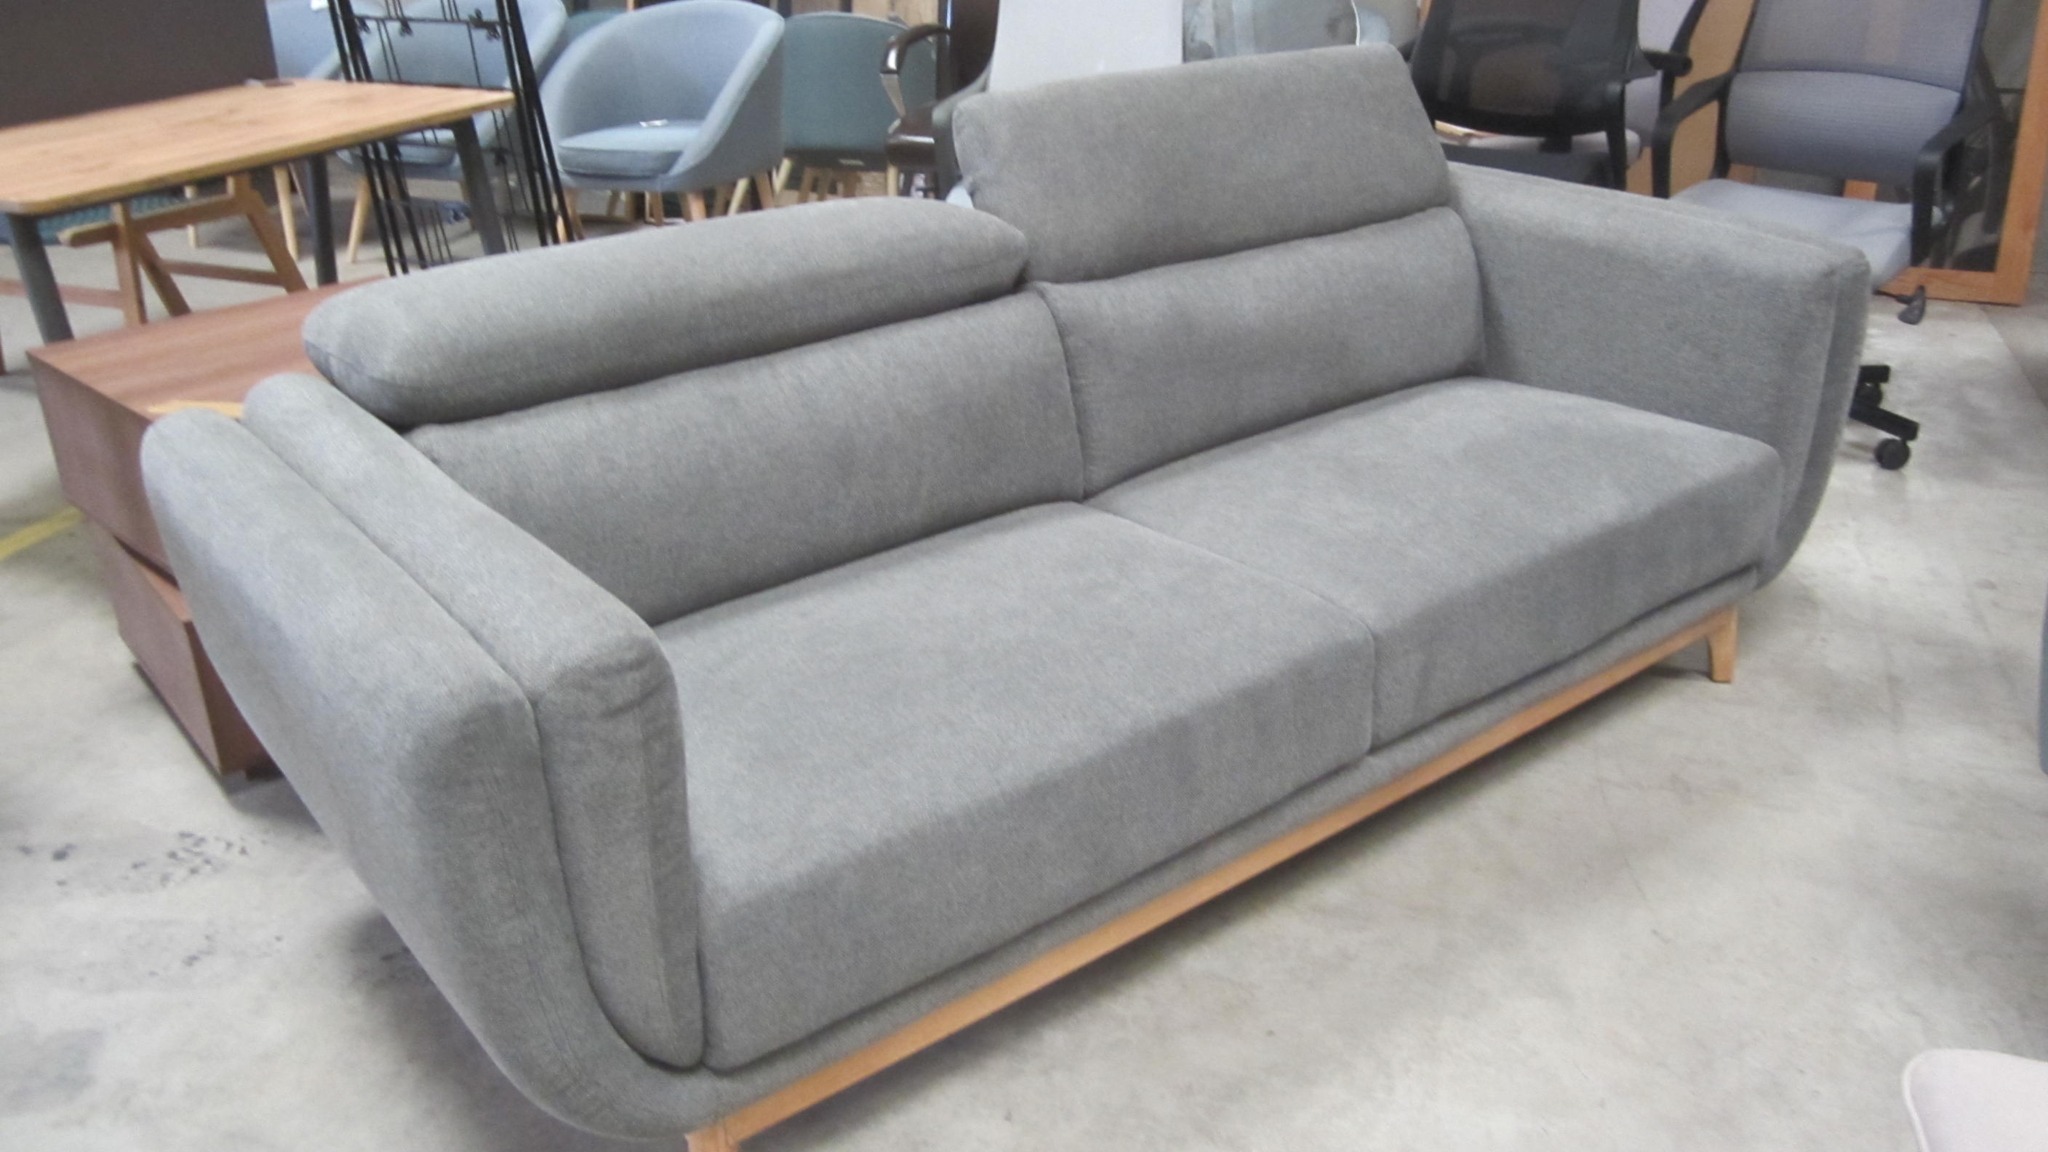 4 pers. design sofa